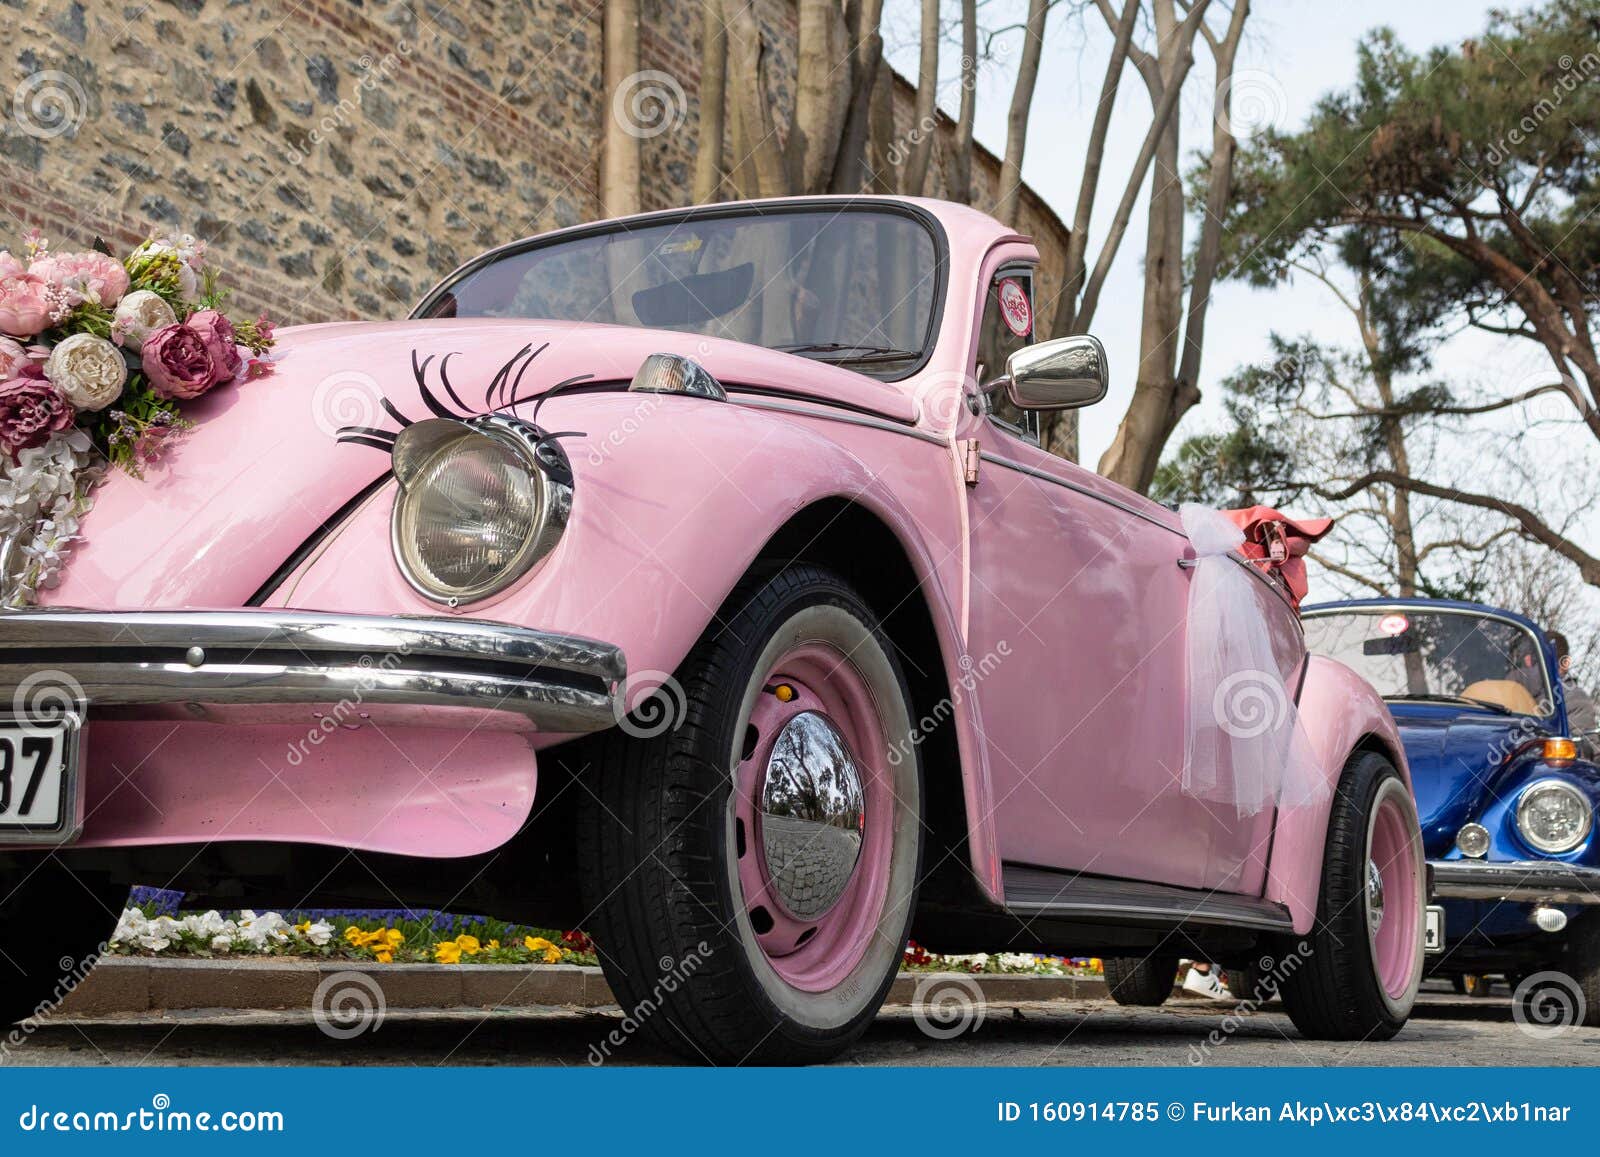 Auto Scheinwerfer Wimpern auf Volkswagen Beetle Auto